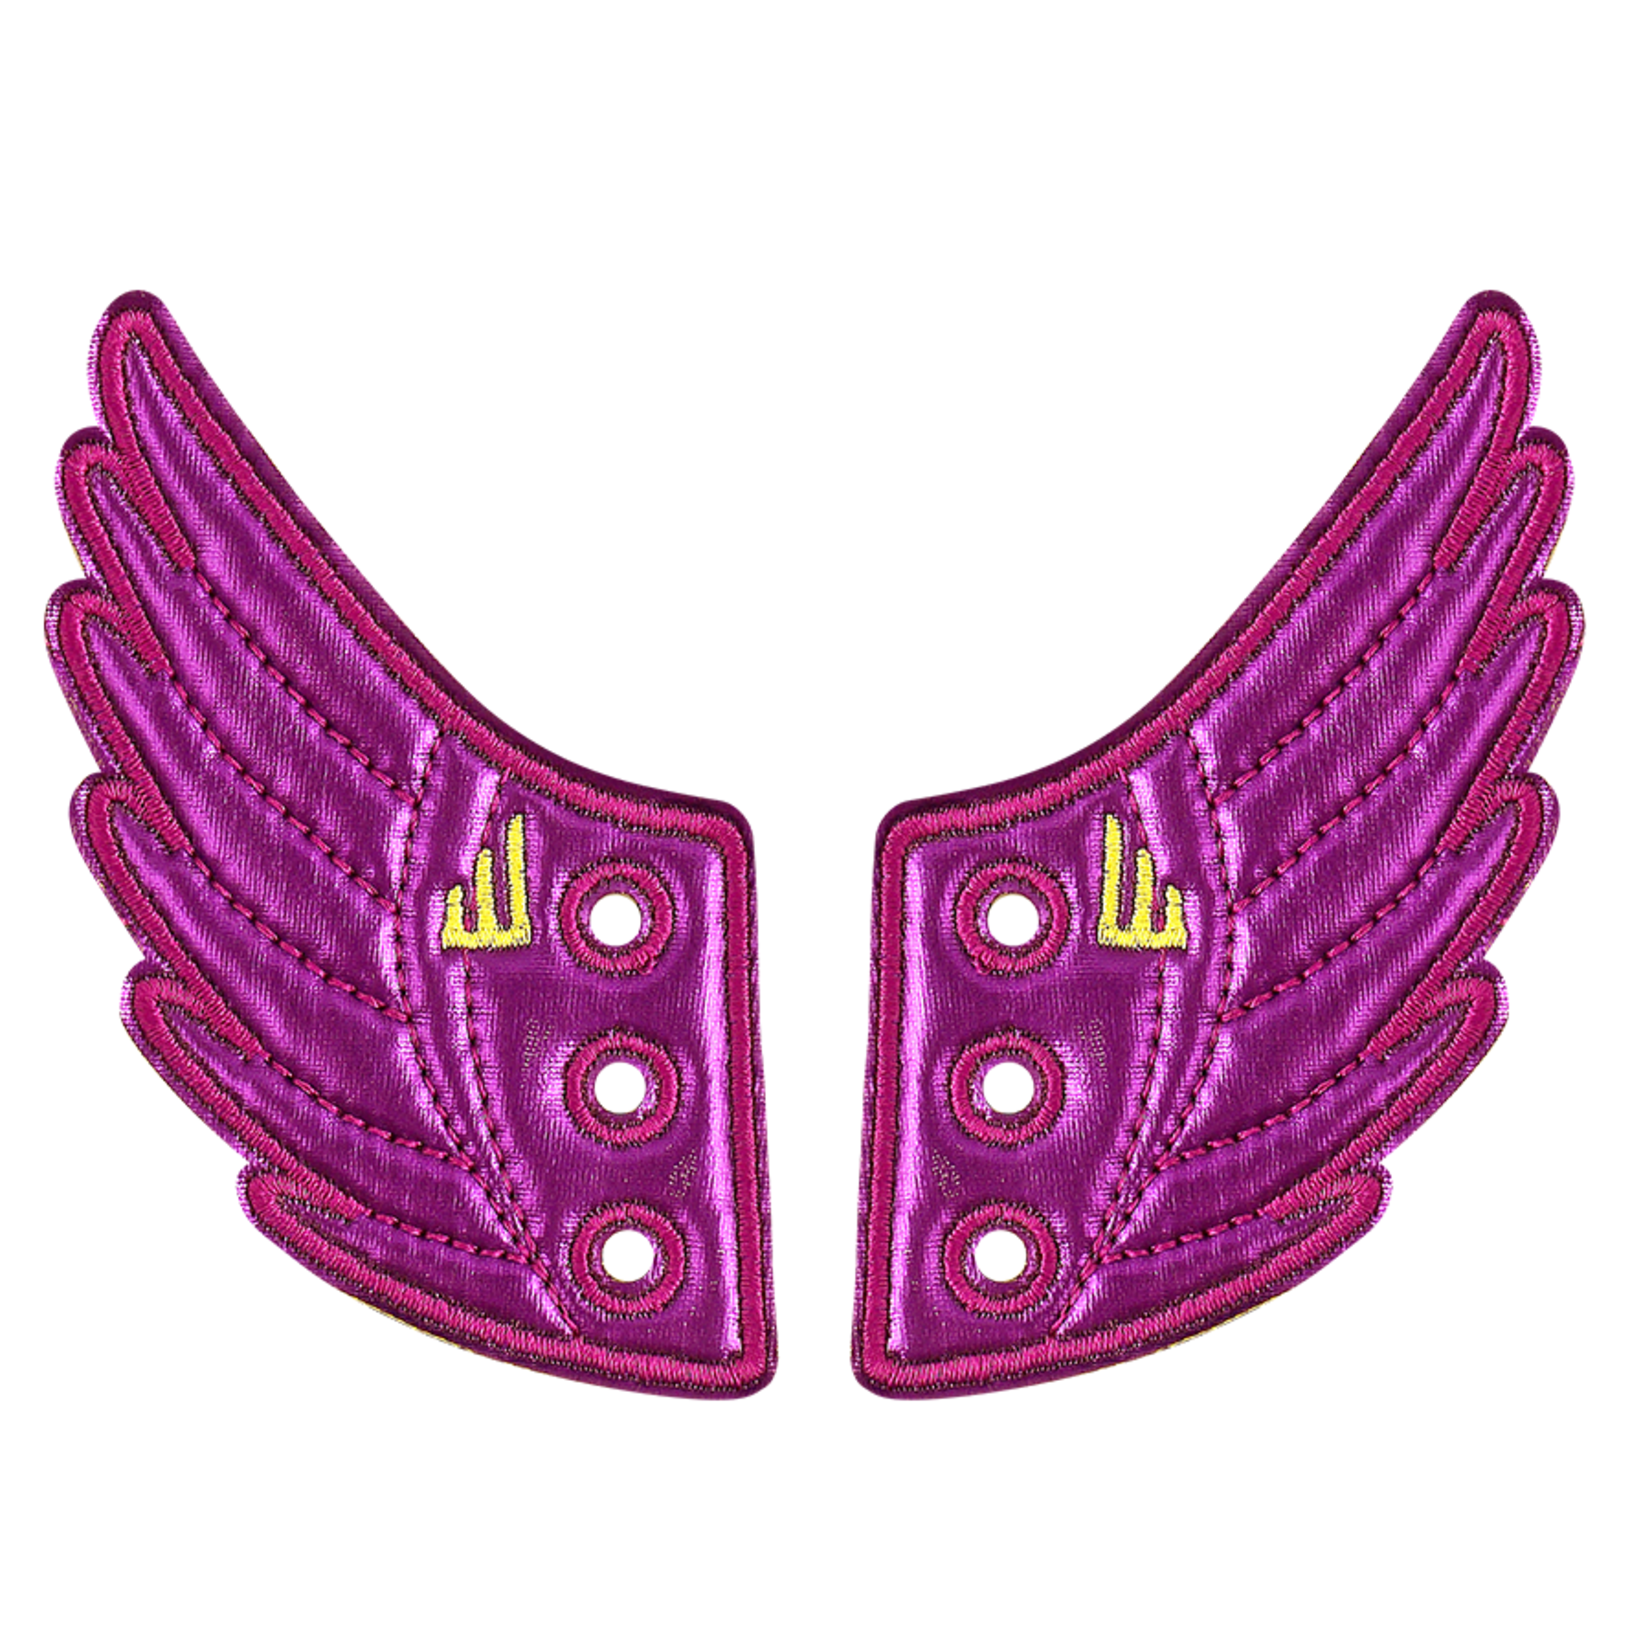 Shwings Shwings Foil wings